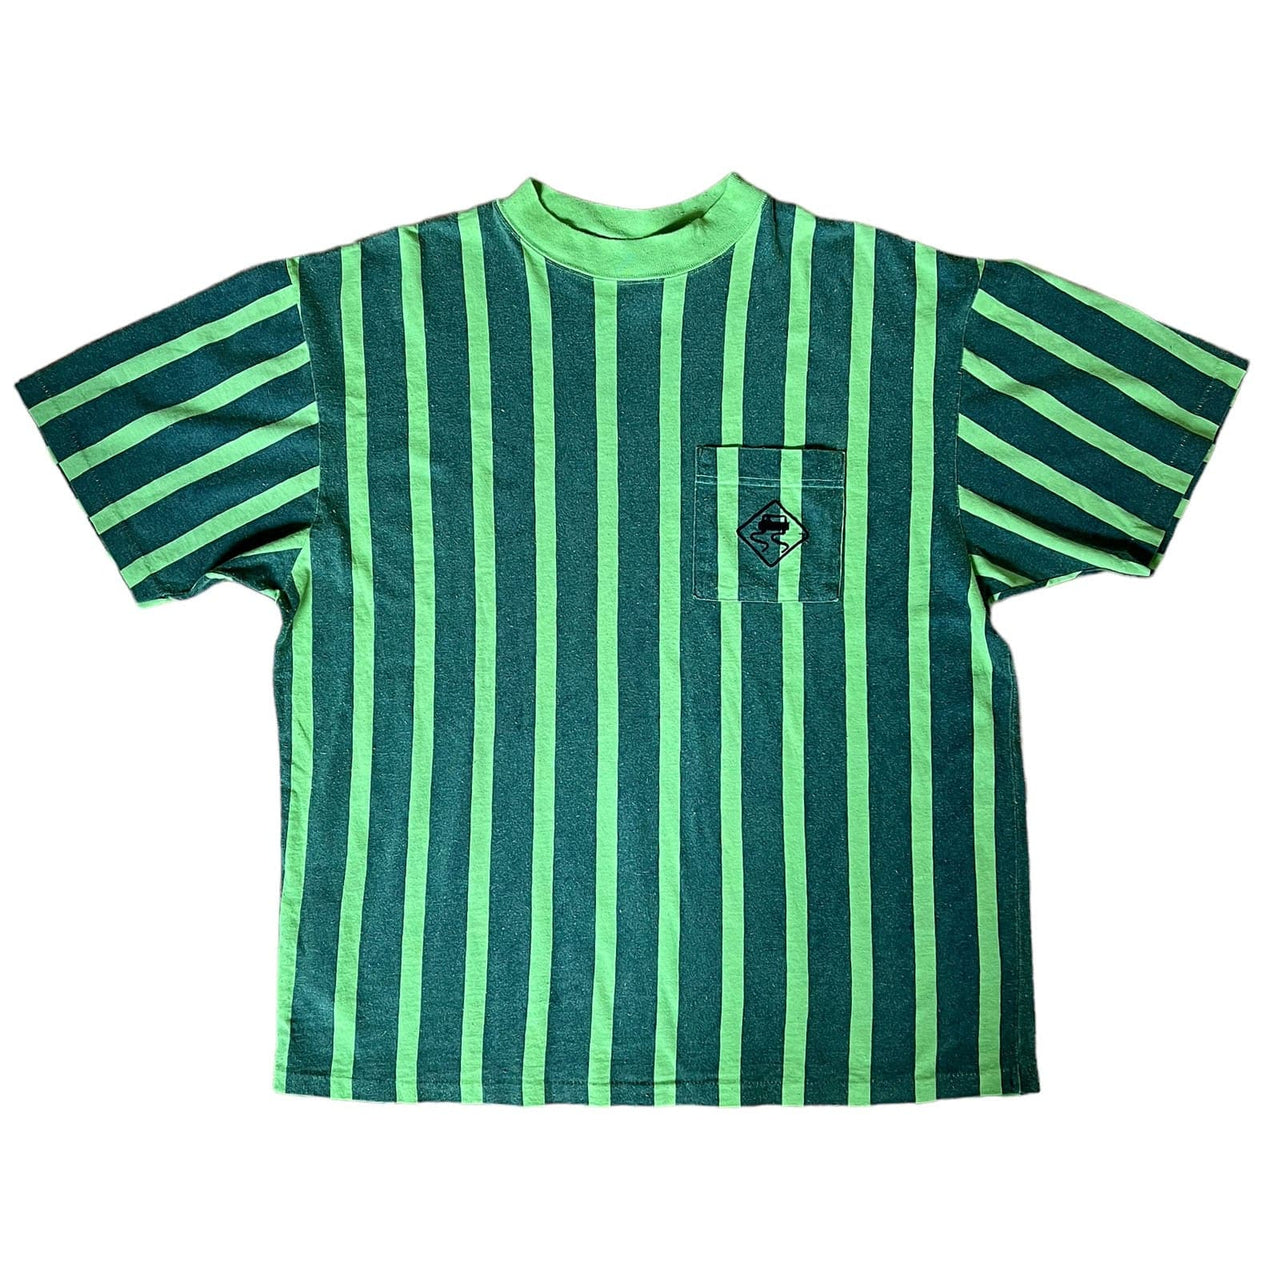 Skidz Shirts & Tops 1990 Short Sleeve Striped Shirt - Green